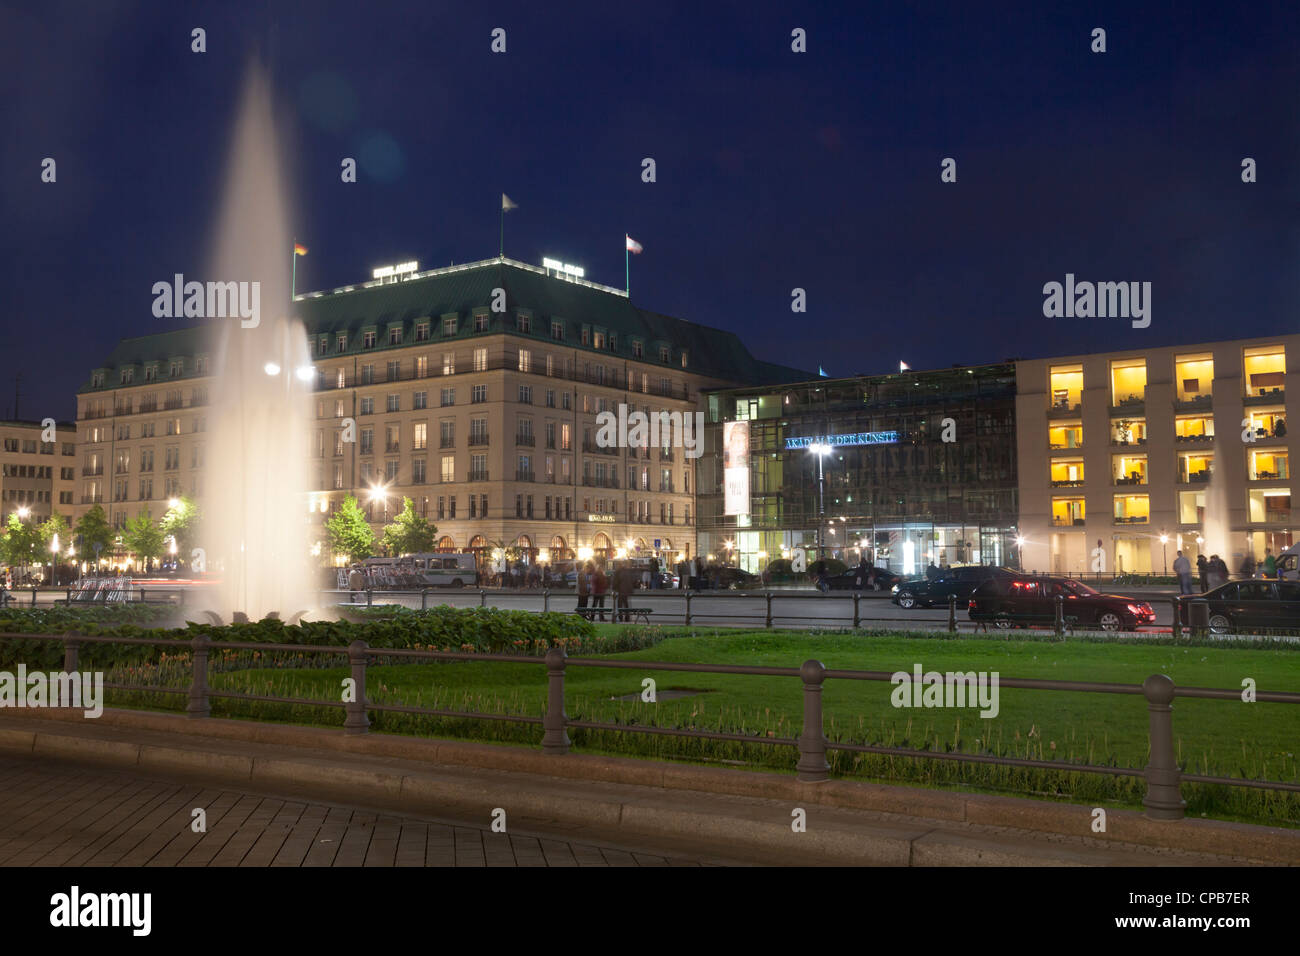 Pariser Platz with Hotel Adlon and Akademie der Kuenste, Berlin, Germany Stock Photo